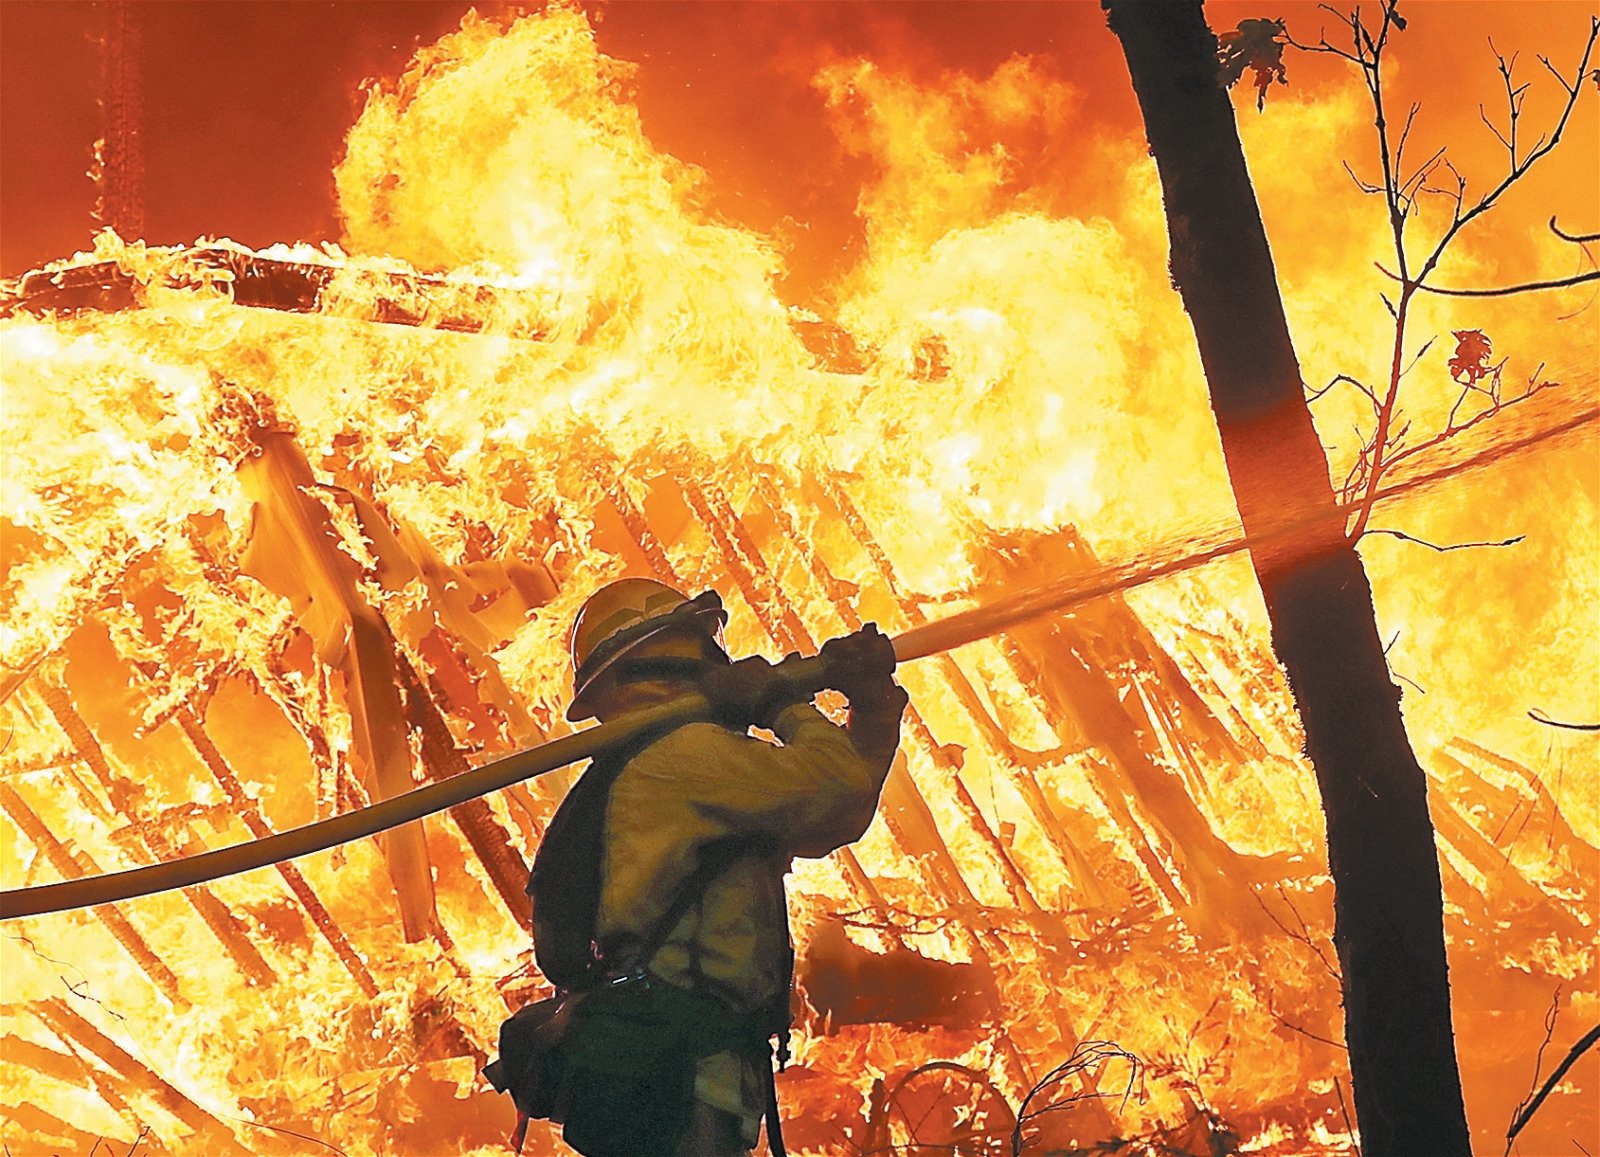 到灾场救火的加州消防人员，扛著消防喉往大火喷洒。其身旁的房 子被烈火吞咽。